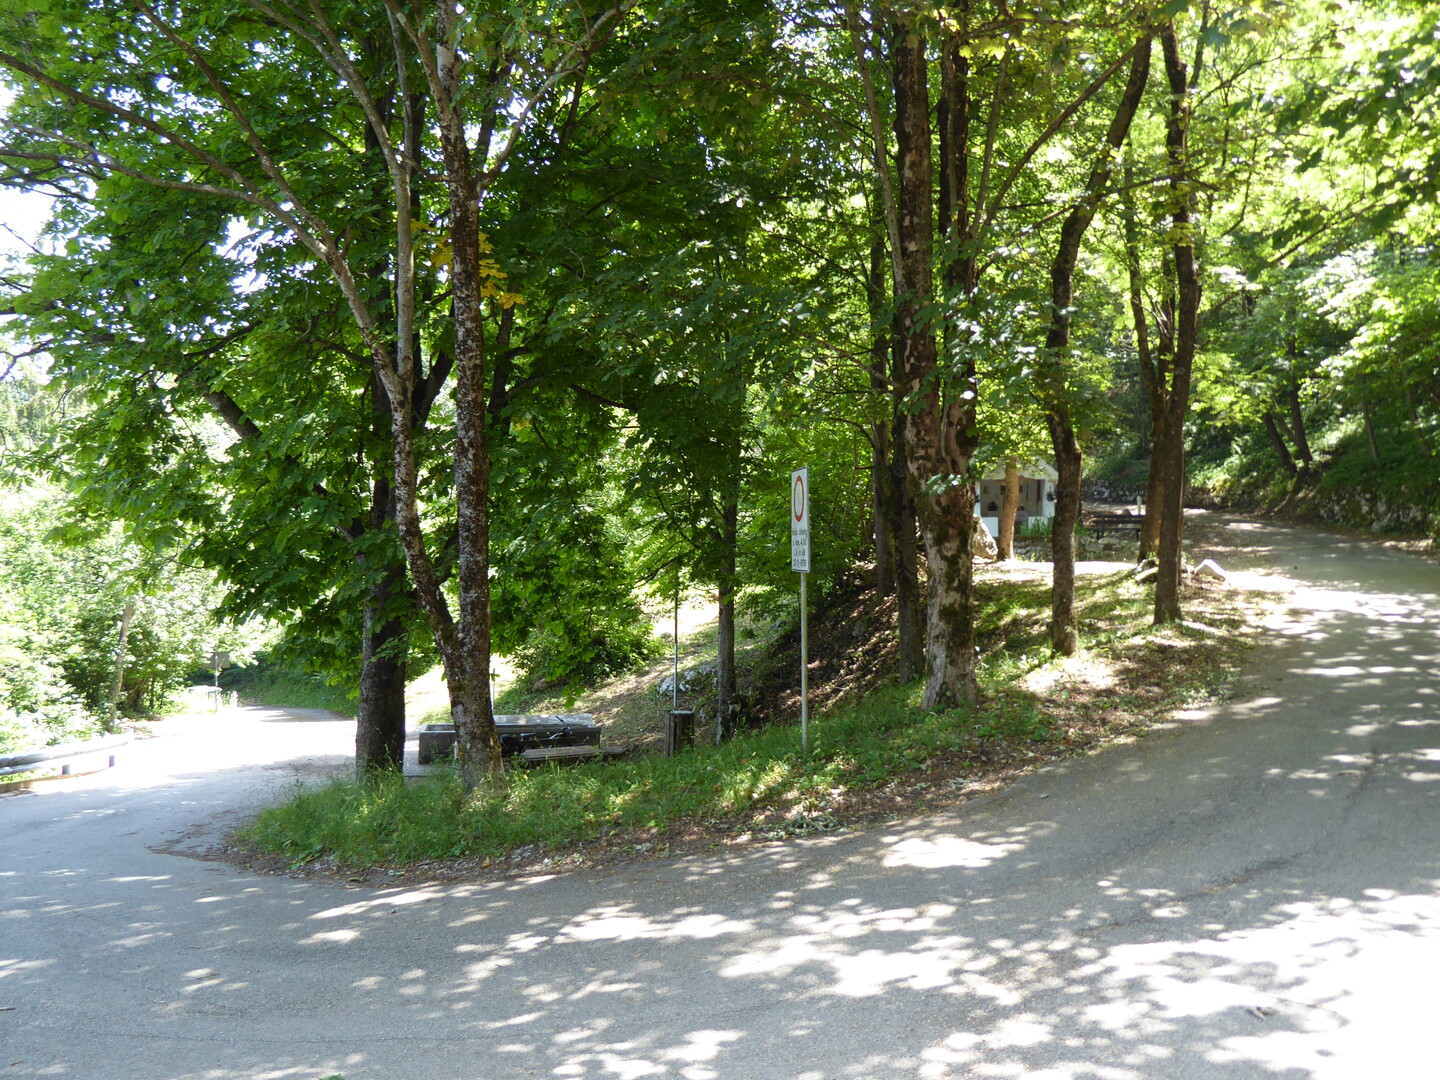 In der Kurve zweigt die Straße nach Rovereto ab. Hinter dem Baum direkt vor der Quelle versteckt sich übrigens ein halbnackter Mann.